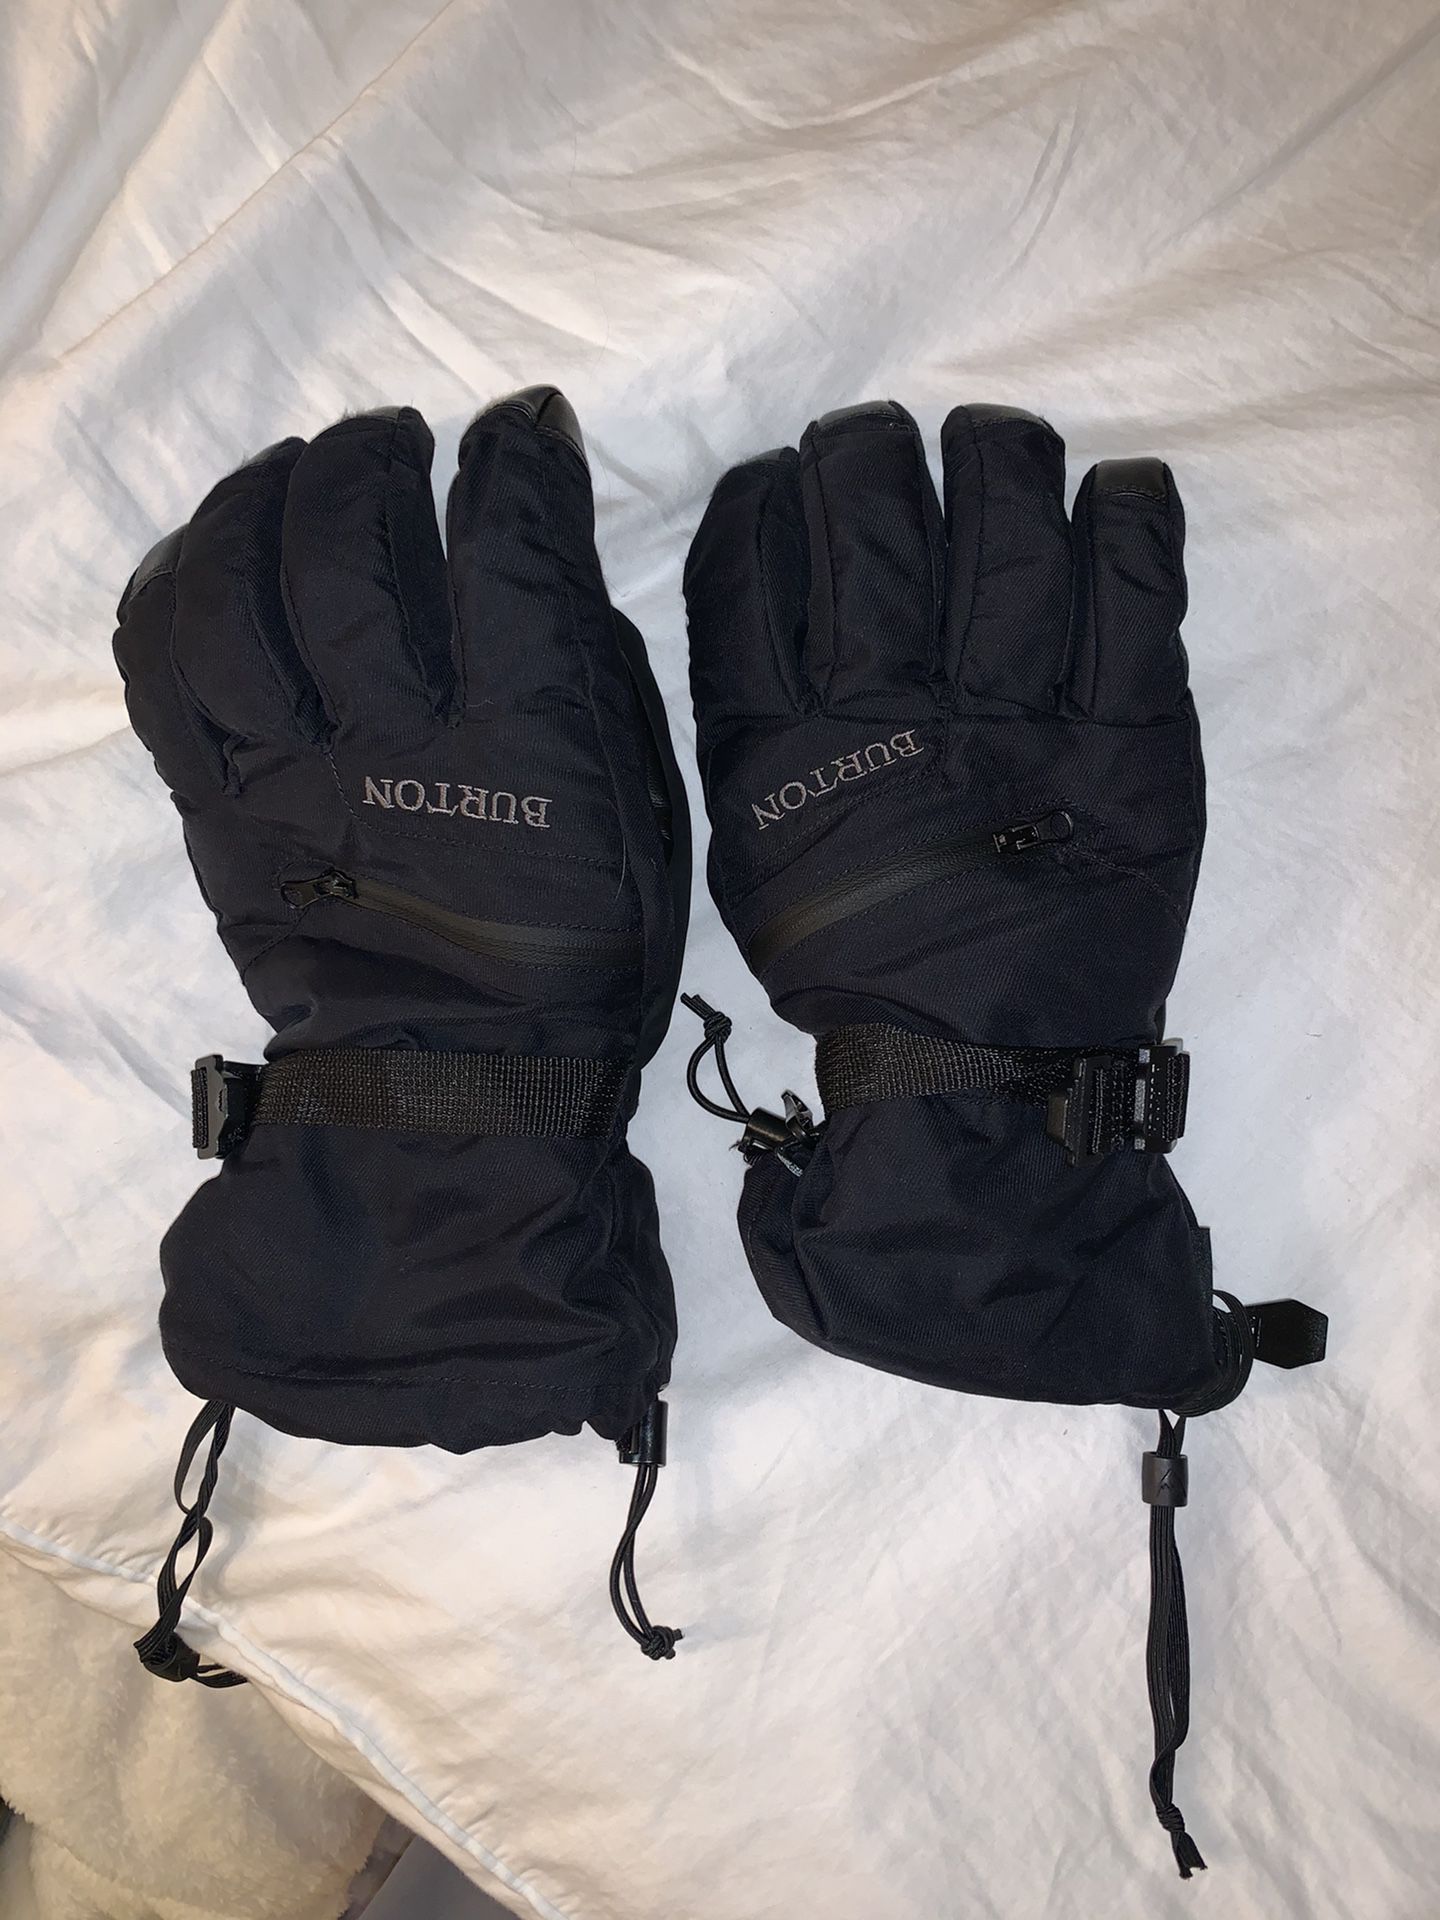 Burton gortex gloves